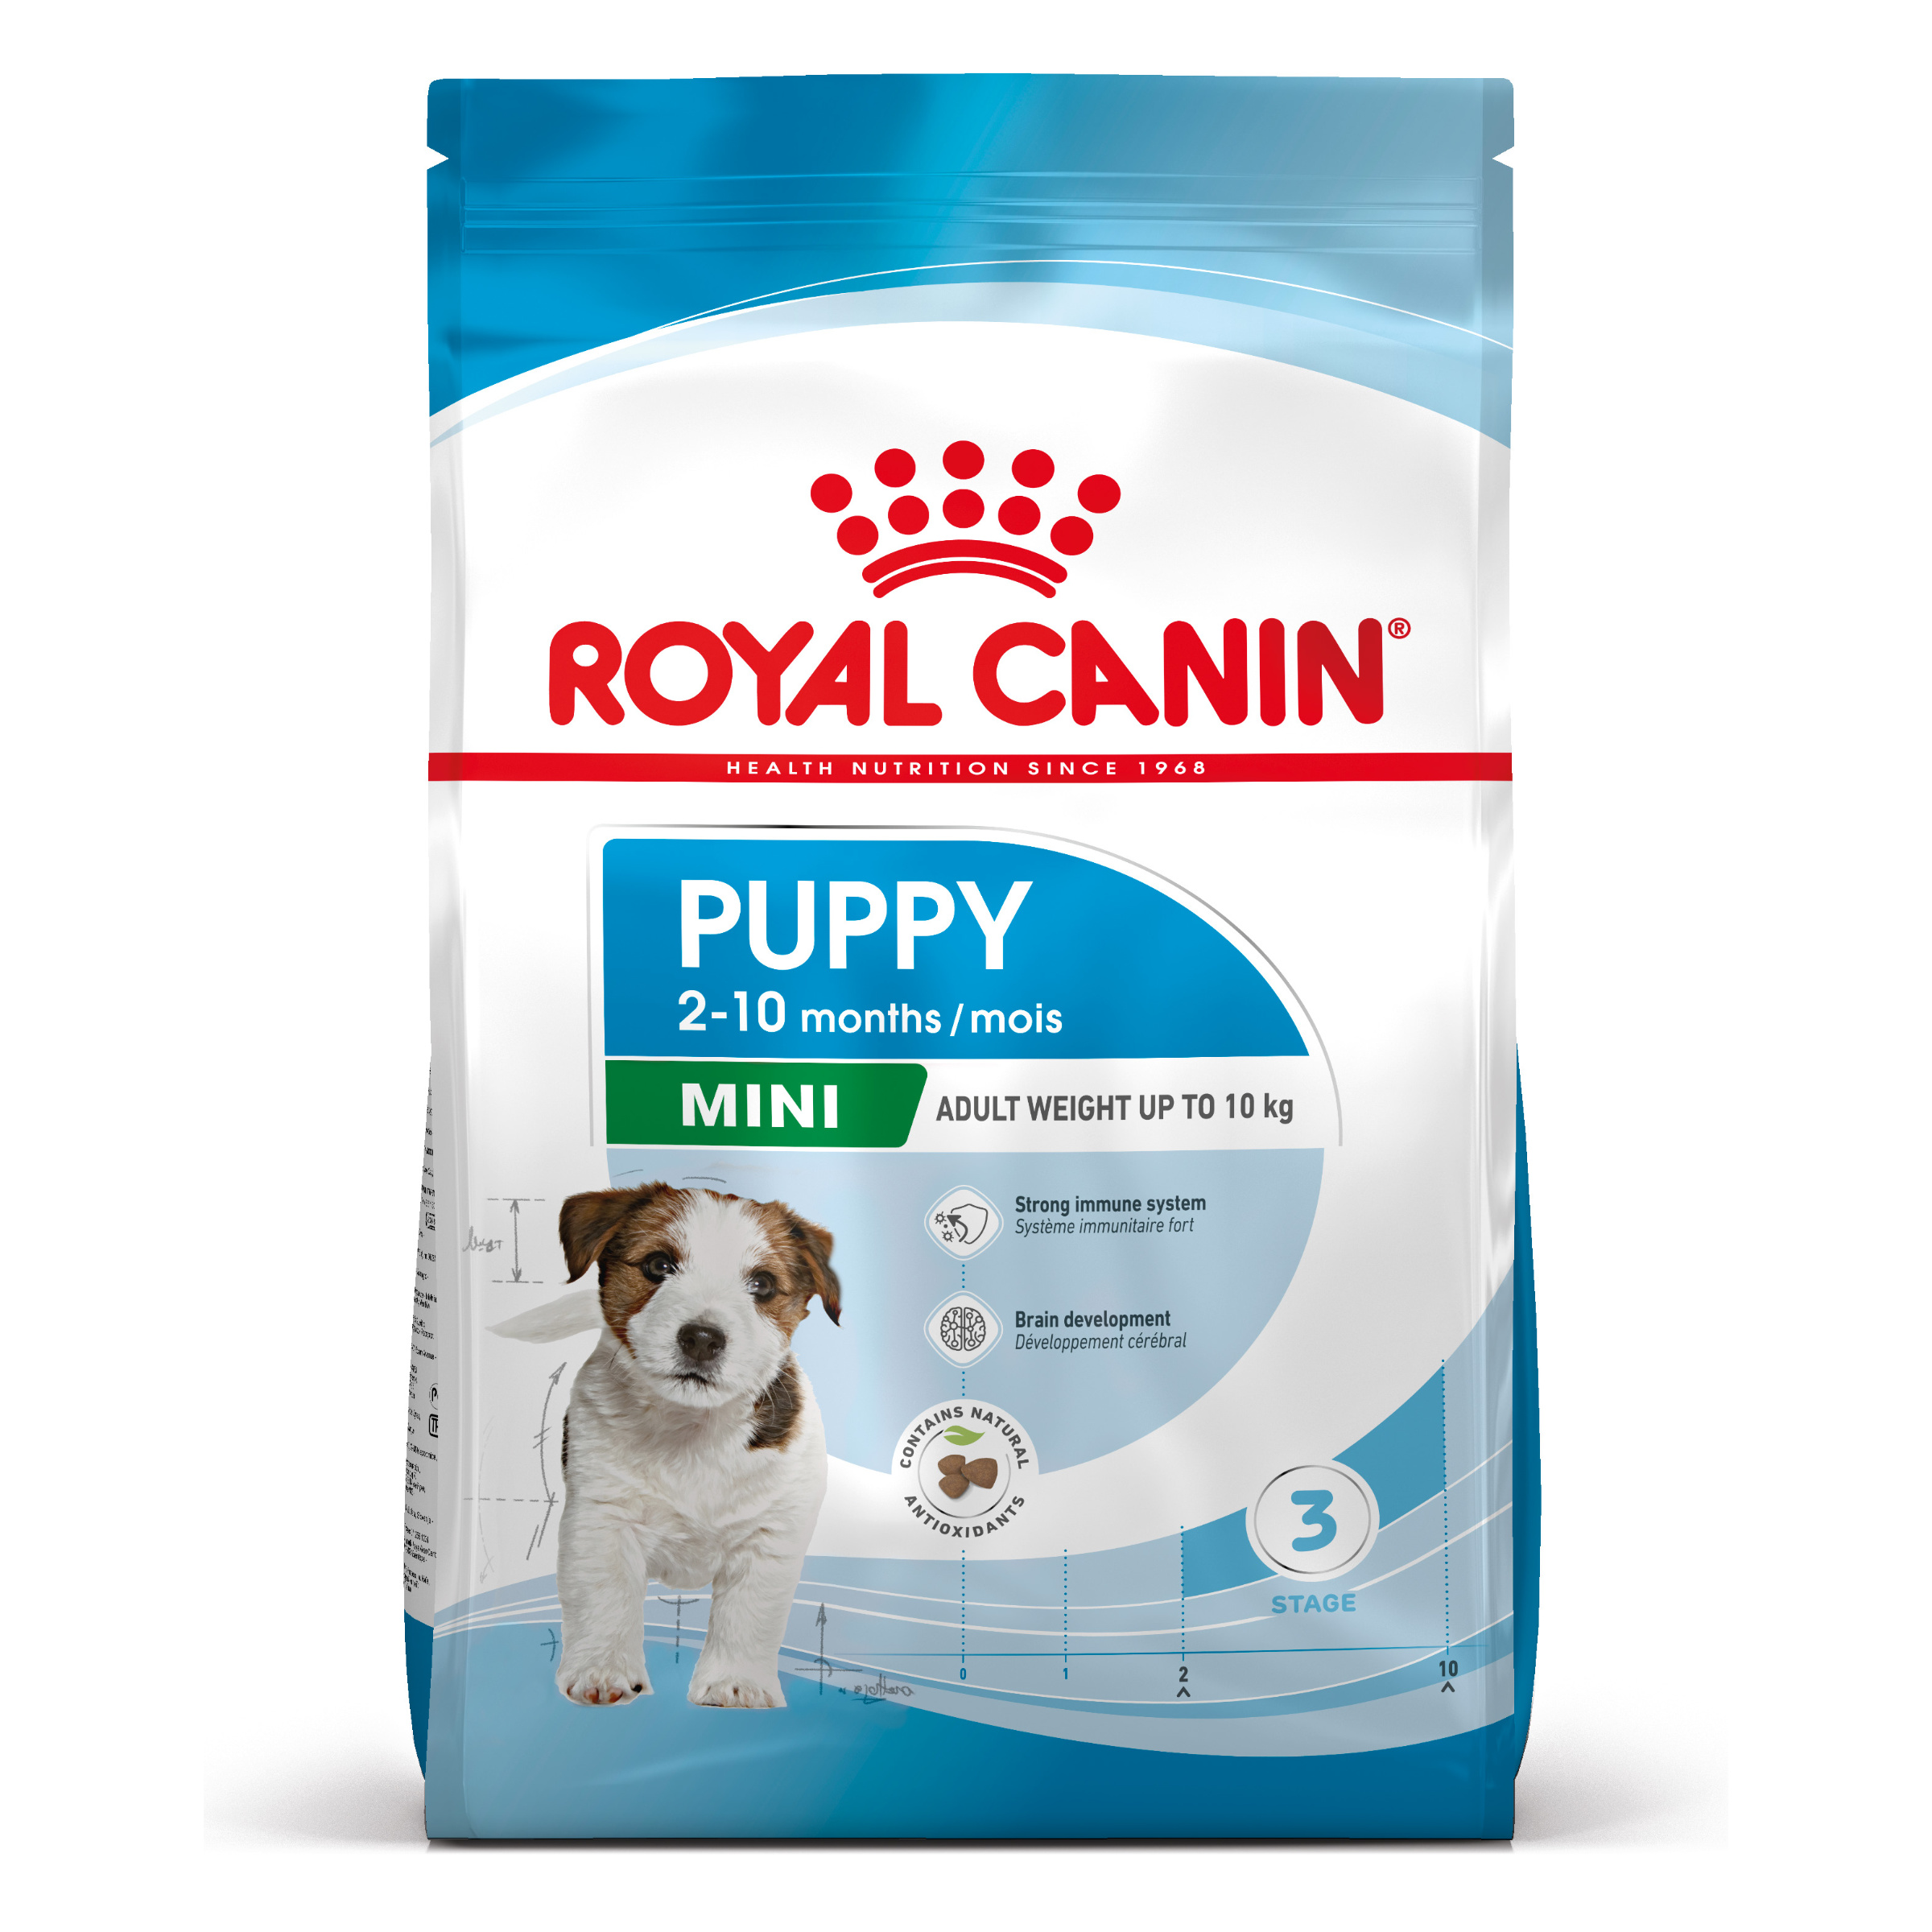 Royal Canin Mini Puppy - Aliment pour chiots de petites races (poids adulte de 1 à 10 kg) -Jusqu’à 10 mois - 4kg